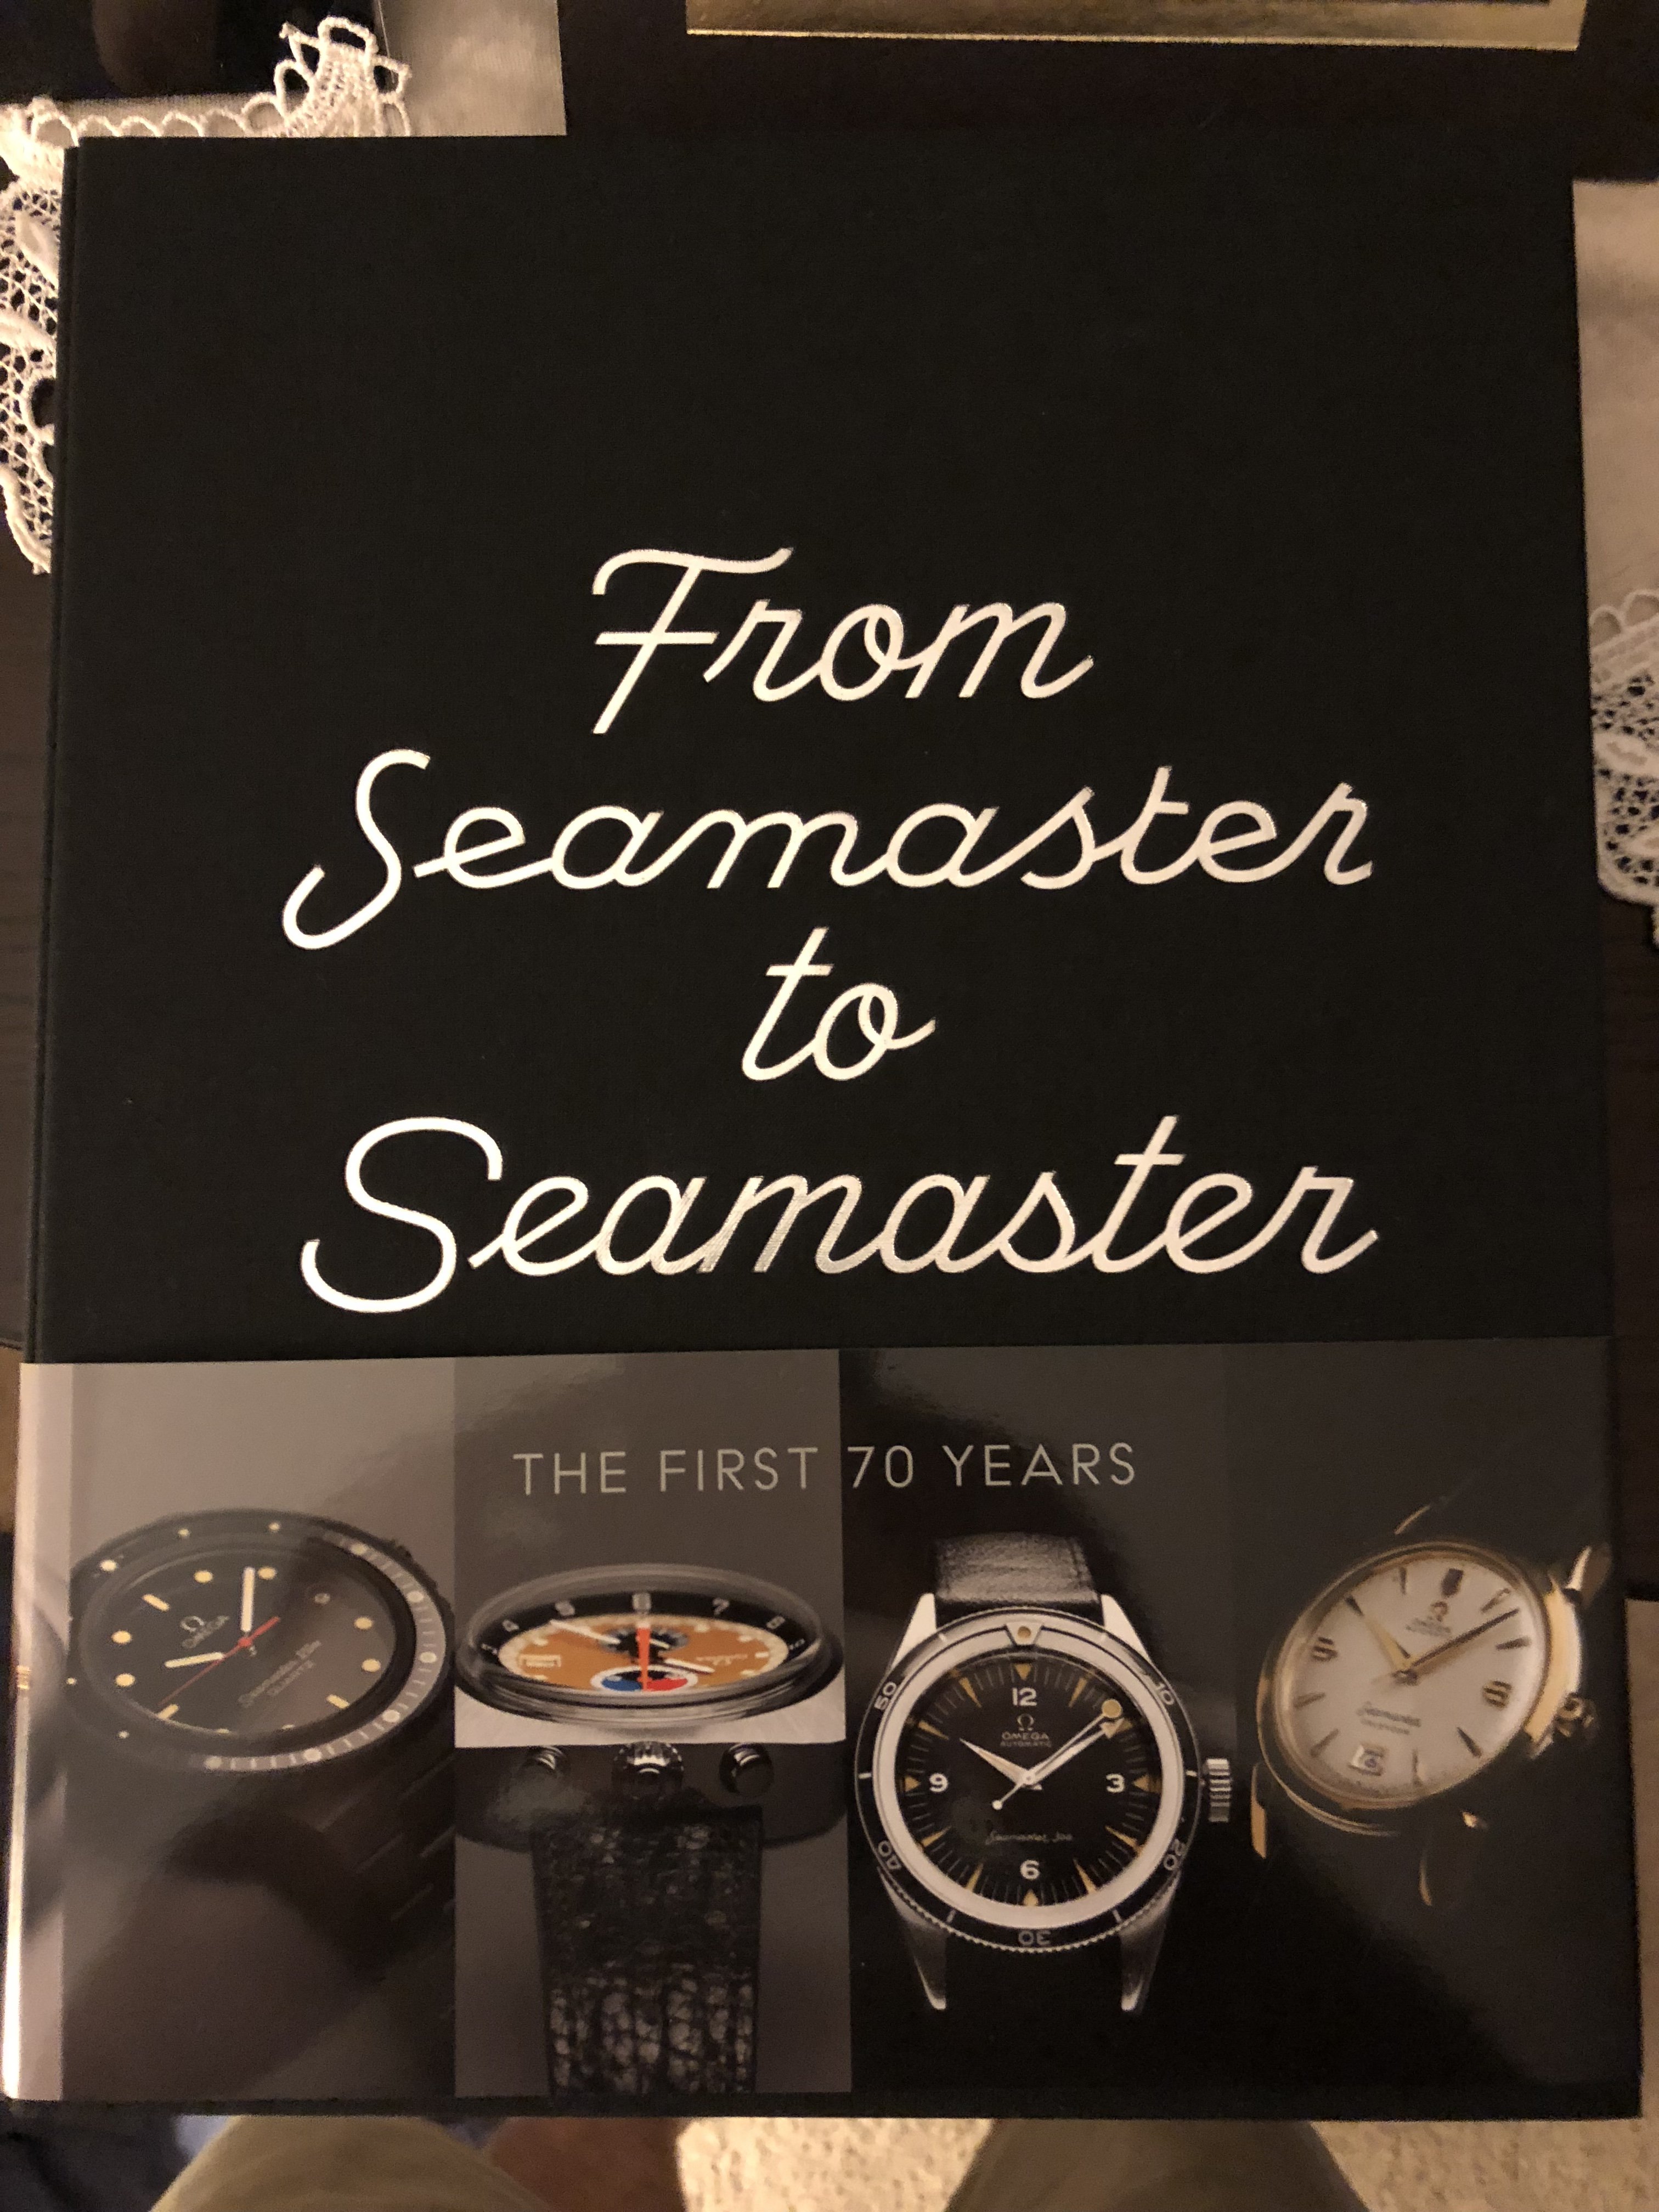 from seamaster to seamaster pdf